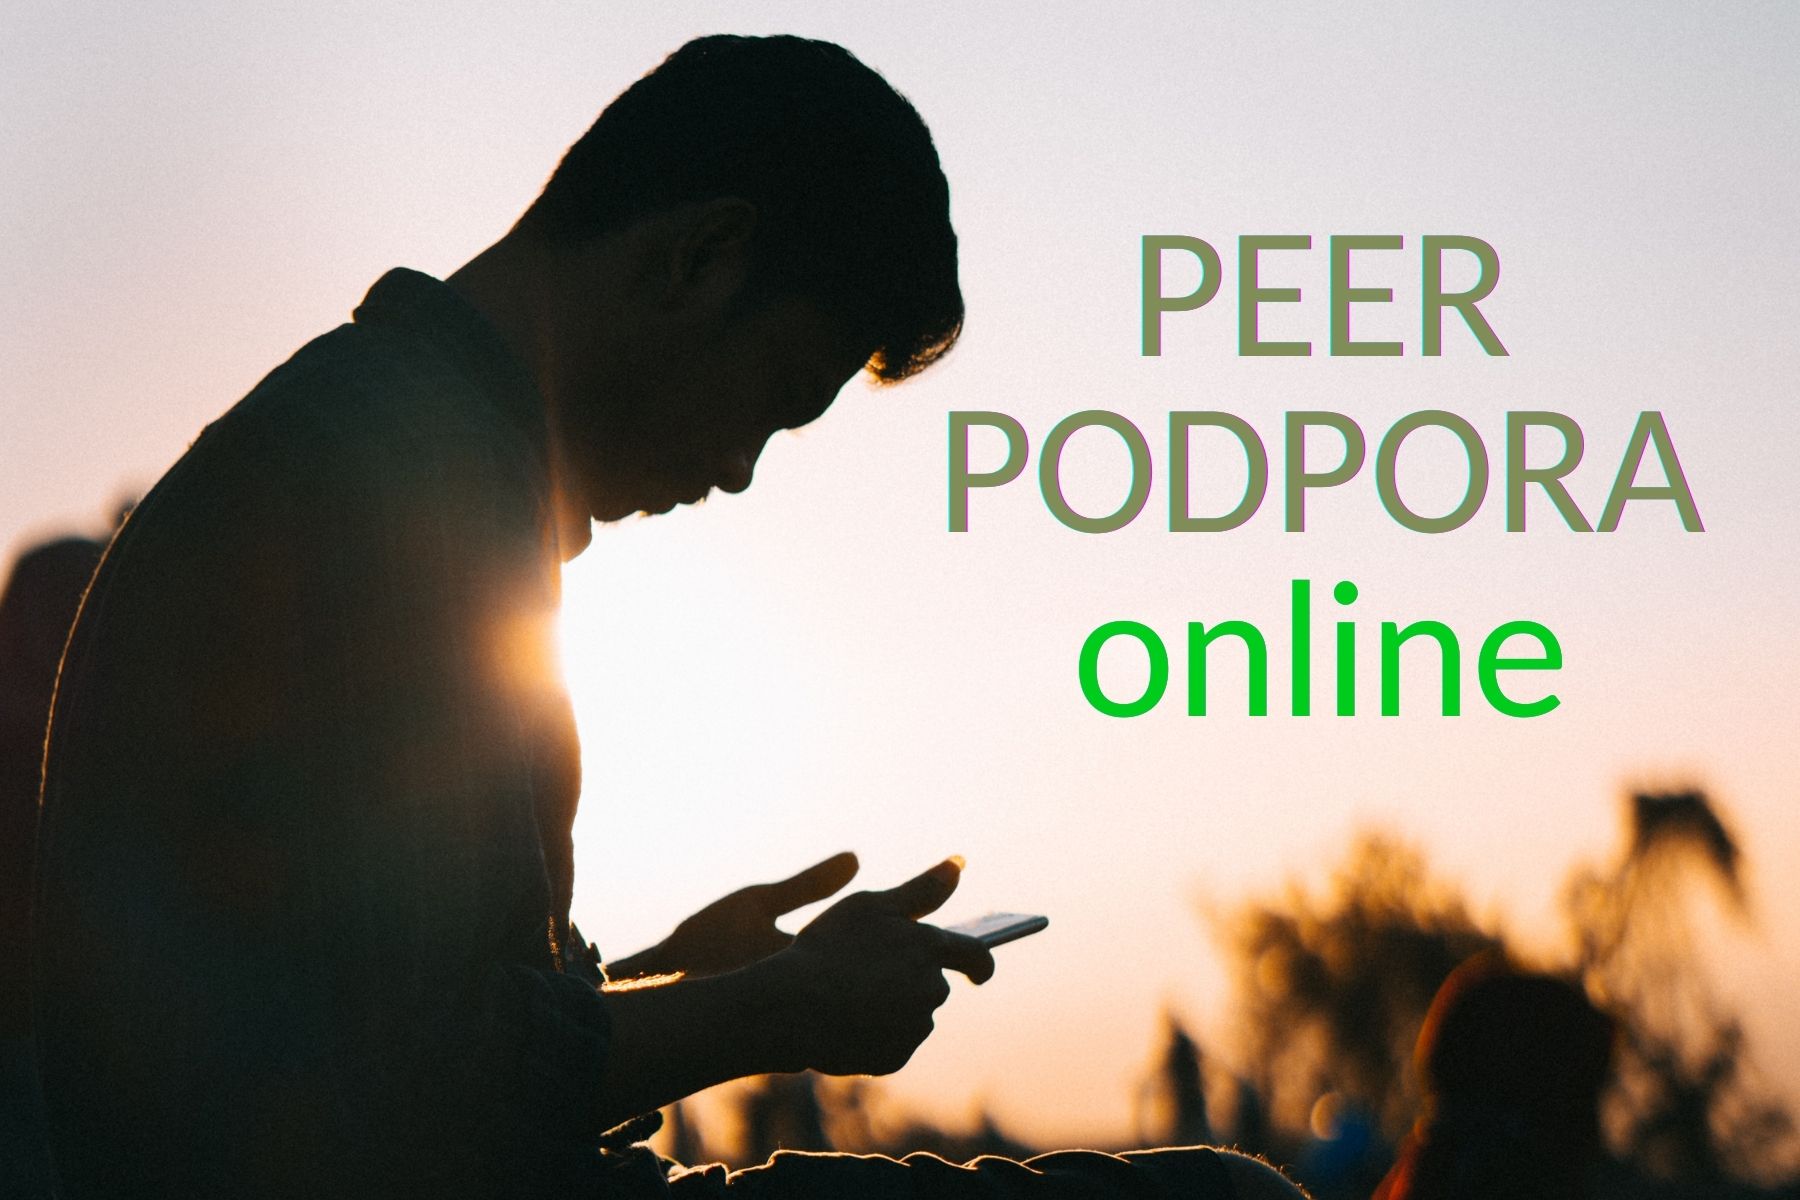 PEER PODPORA online